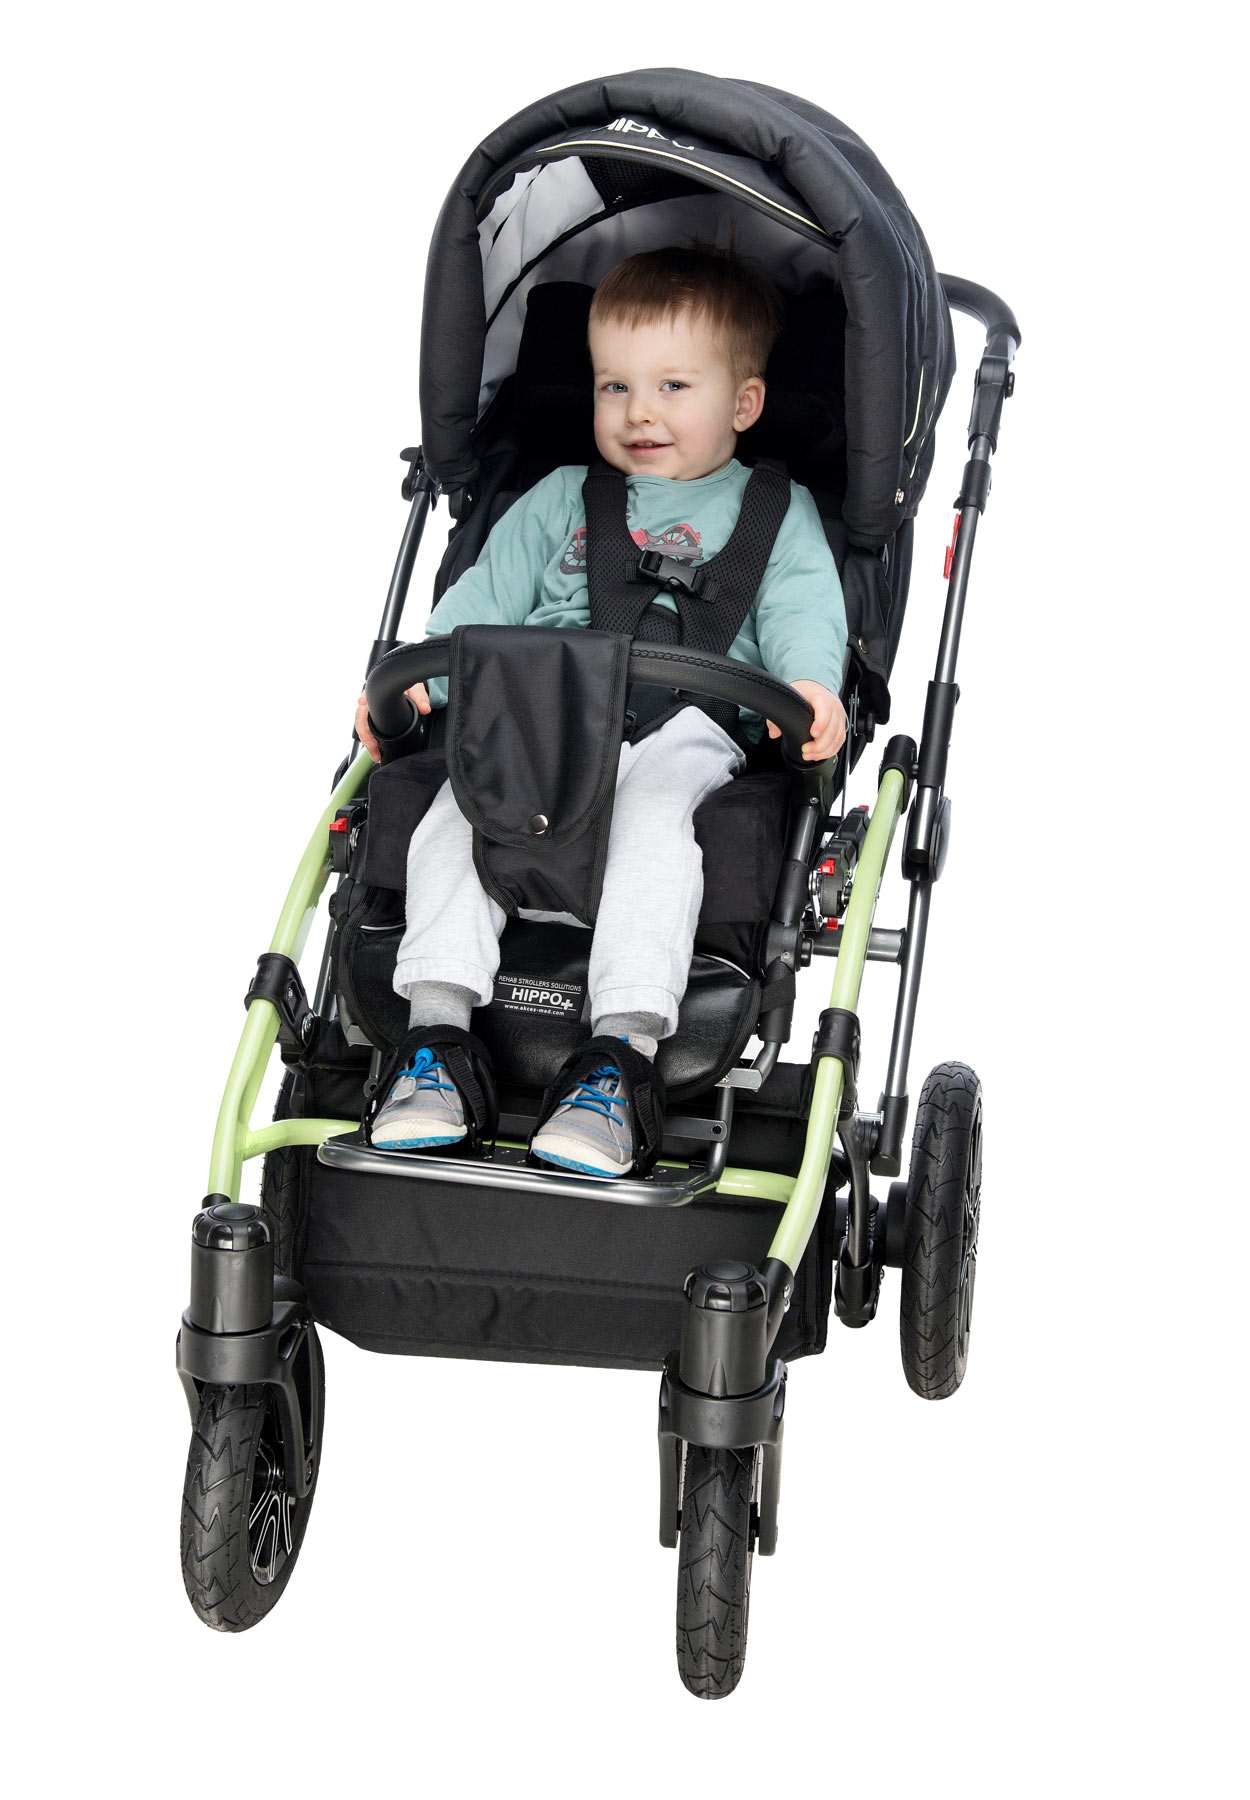 Прогулочная коляска для крупного ребенка. Кресло-коляска для детей с ДЦП Akces-med Гиппо-2. Гиппо коляска для ДЦП 2. Гиппо коляска для ДЦП 2 размер. Детская инвалидная коляска AKCESMED Гиппо.